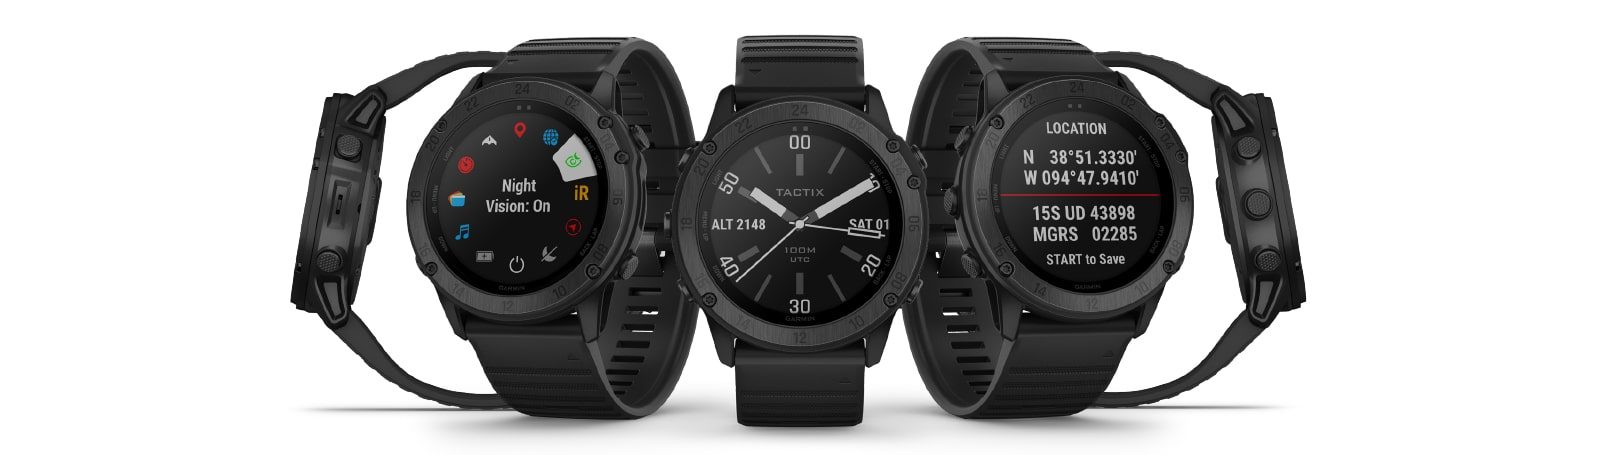 Die neueste Tactix Smartwatch von Garmin verfügt über einen Stealth-Modus, taktische Funktionen und mehr 301